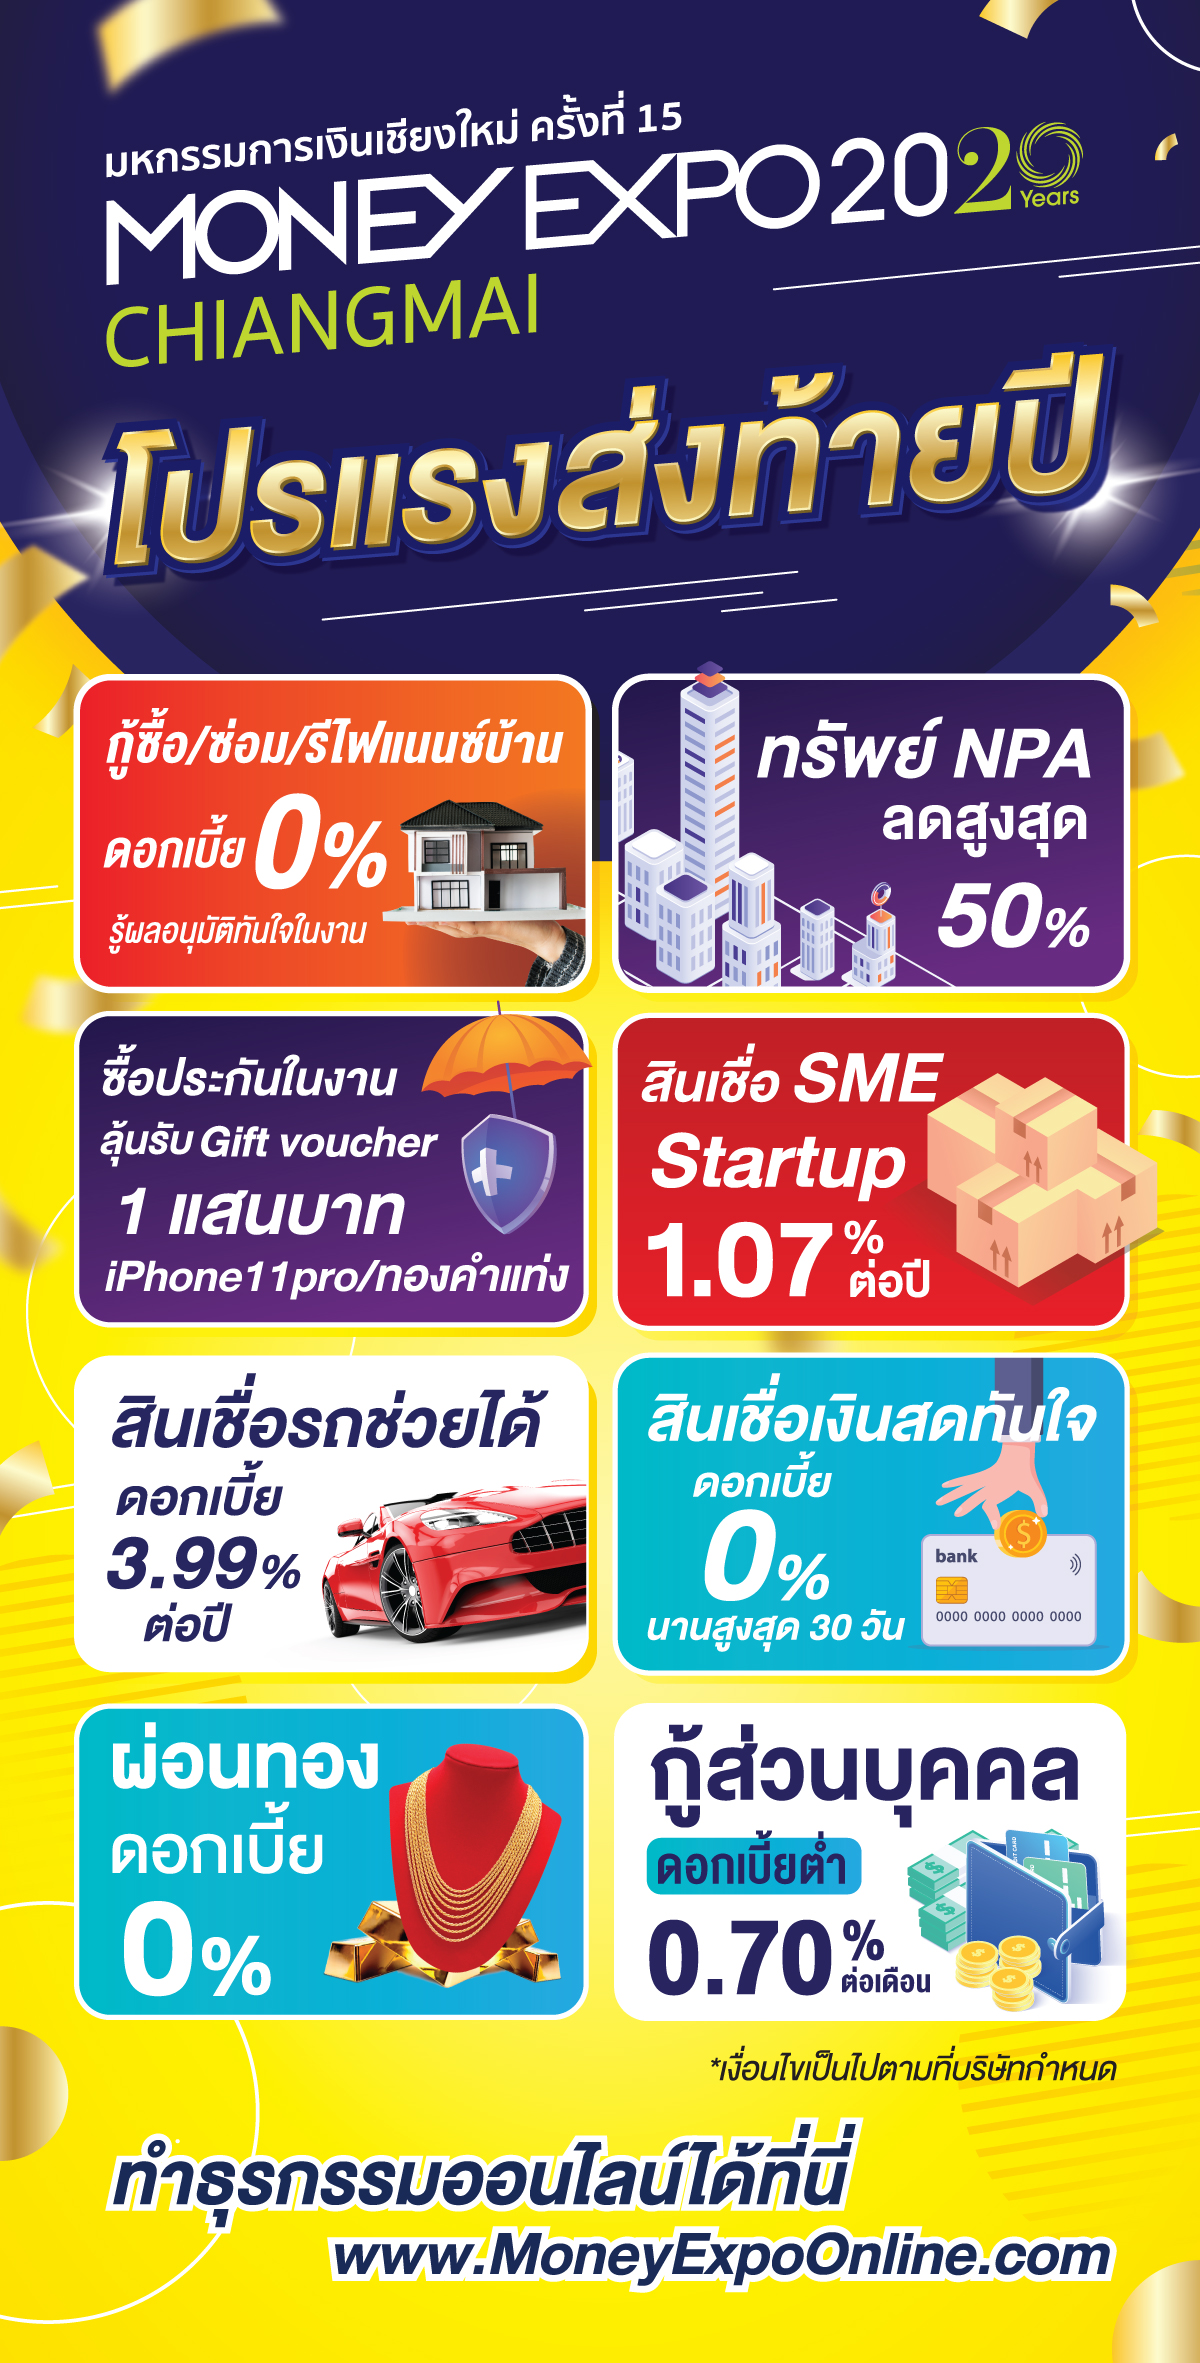 Money Expo Chiangmai 2020